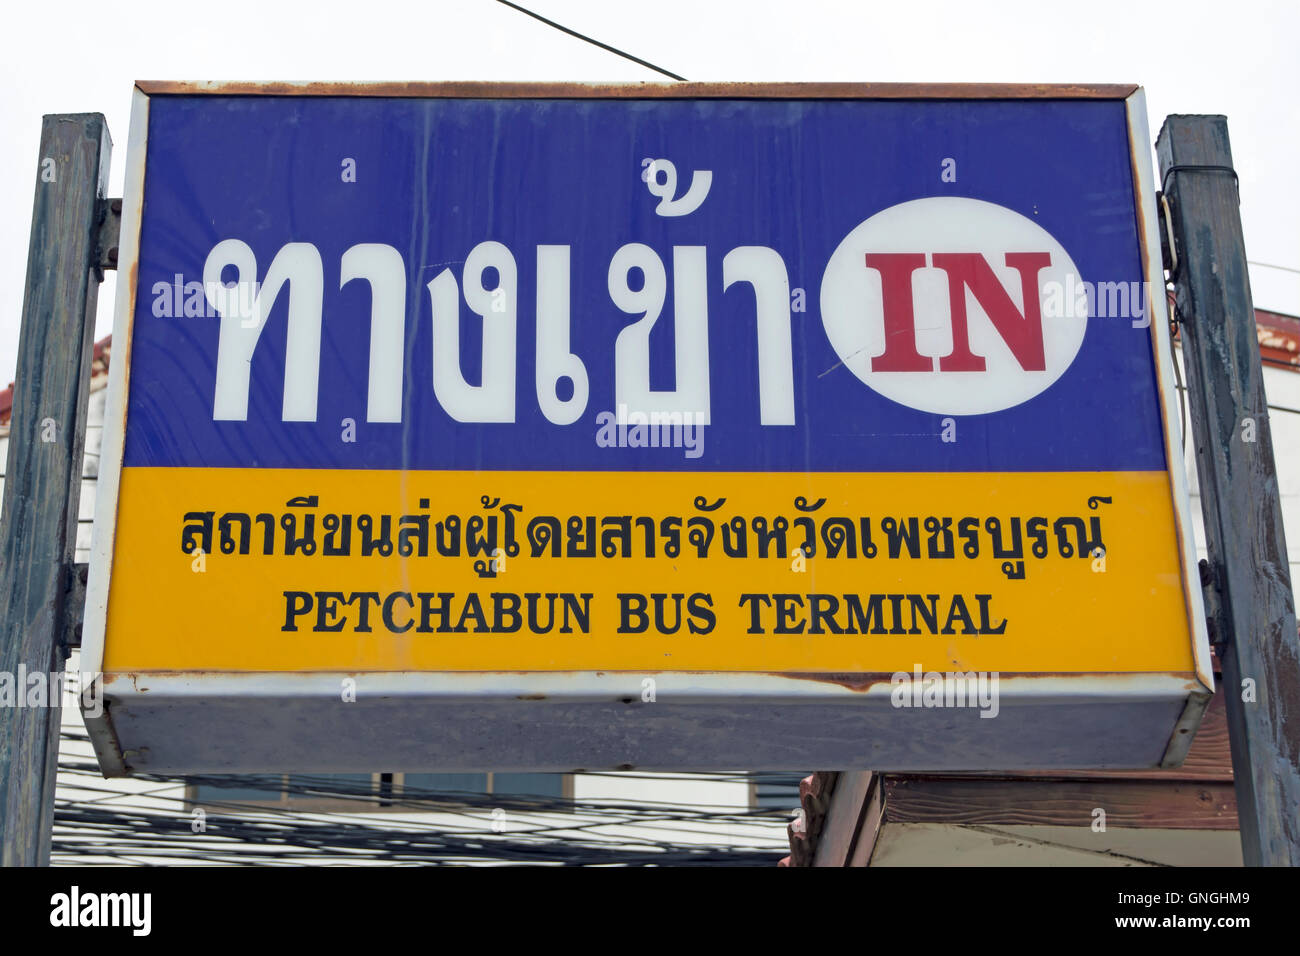 Signo de la terminal de autobuses de phetchabun Phetchabun, Tailandia (usando el menos común la ortografía inglesa de 'petchabun') Foto de stock